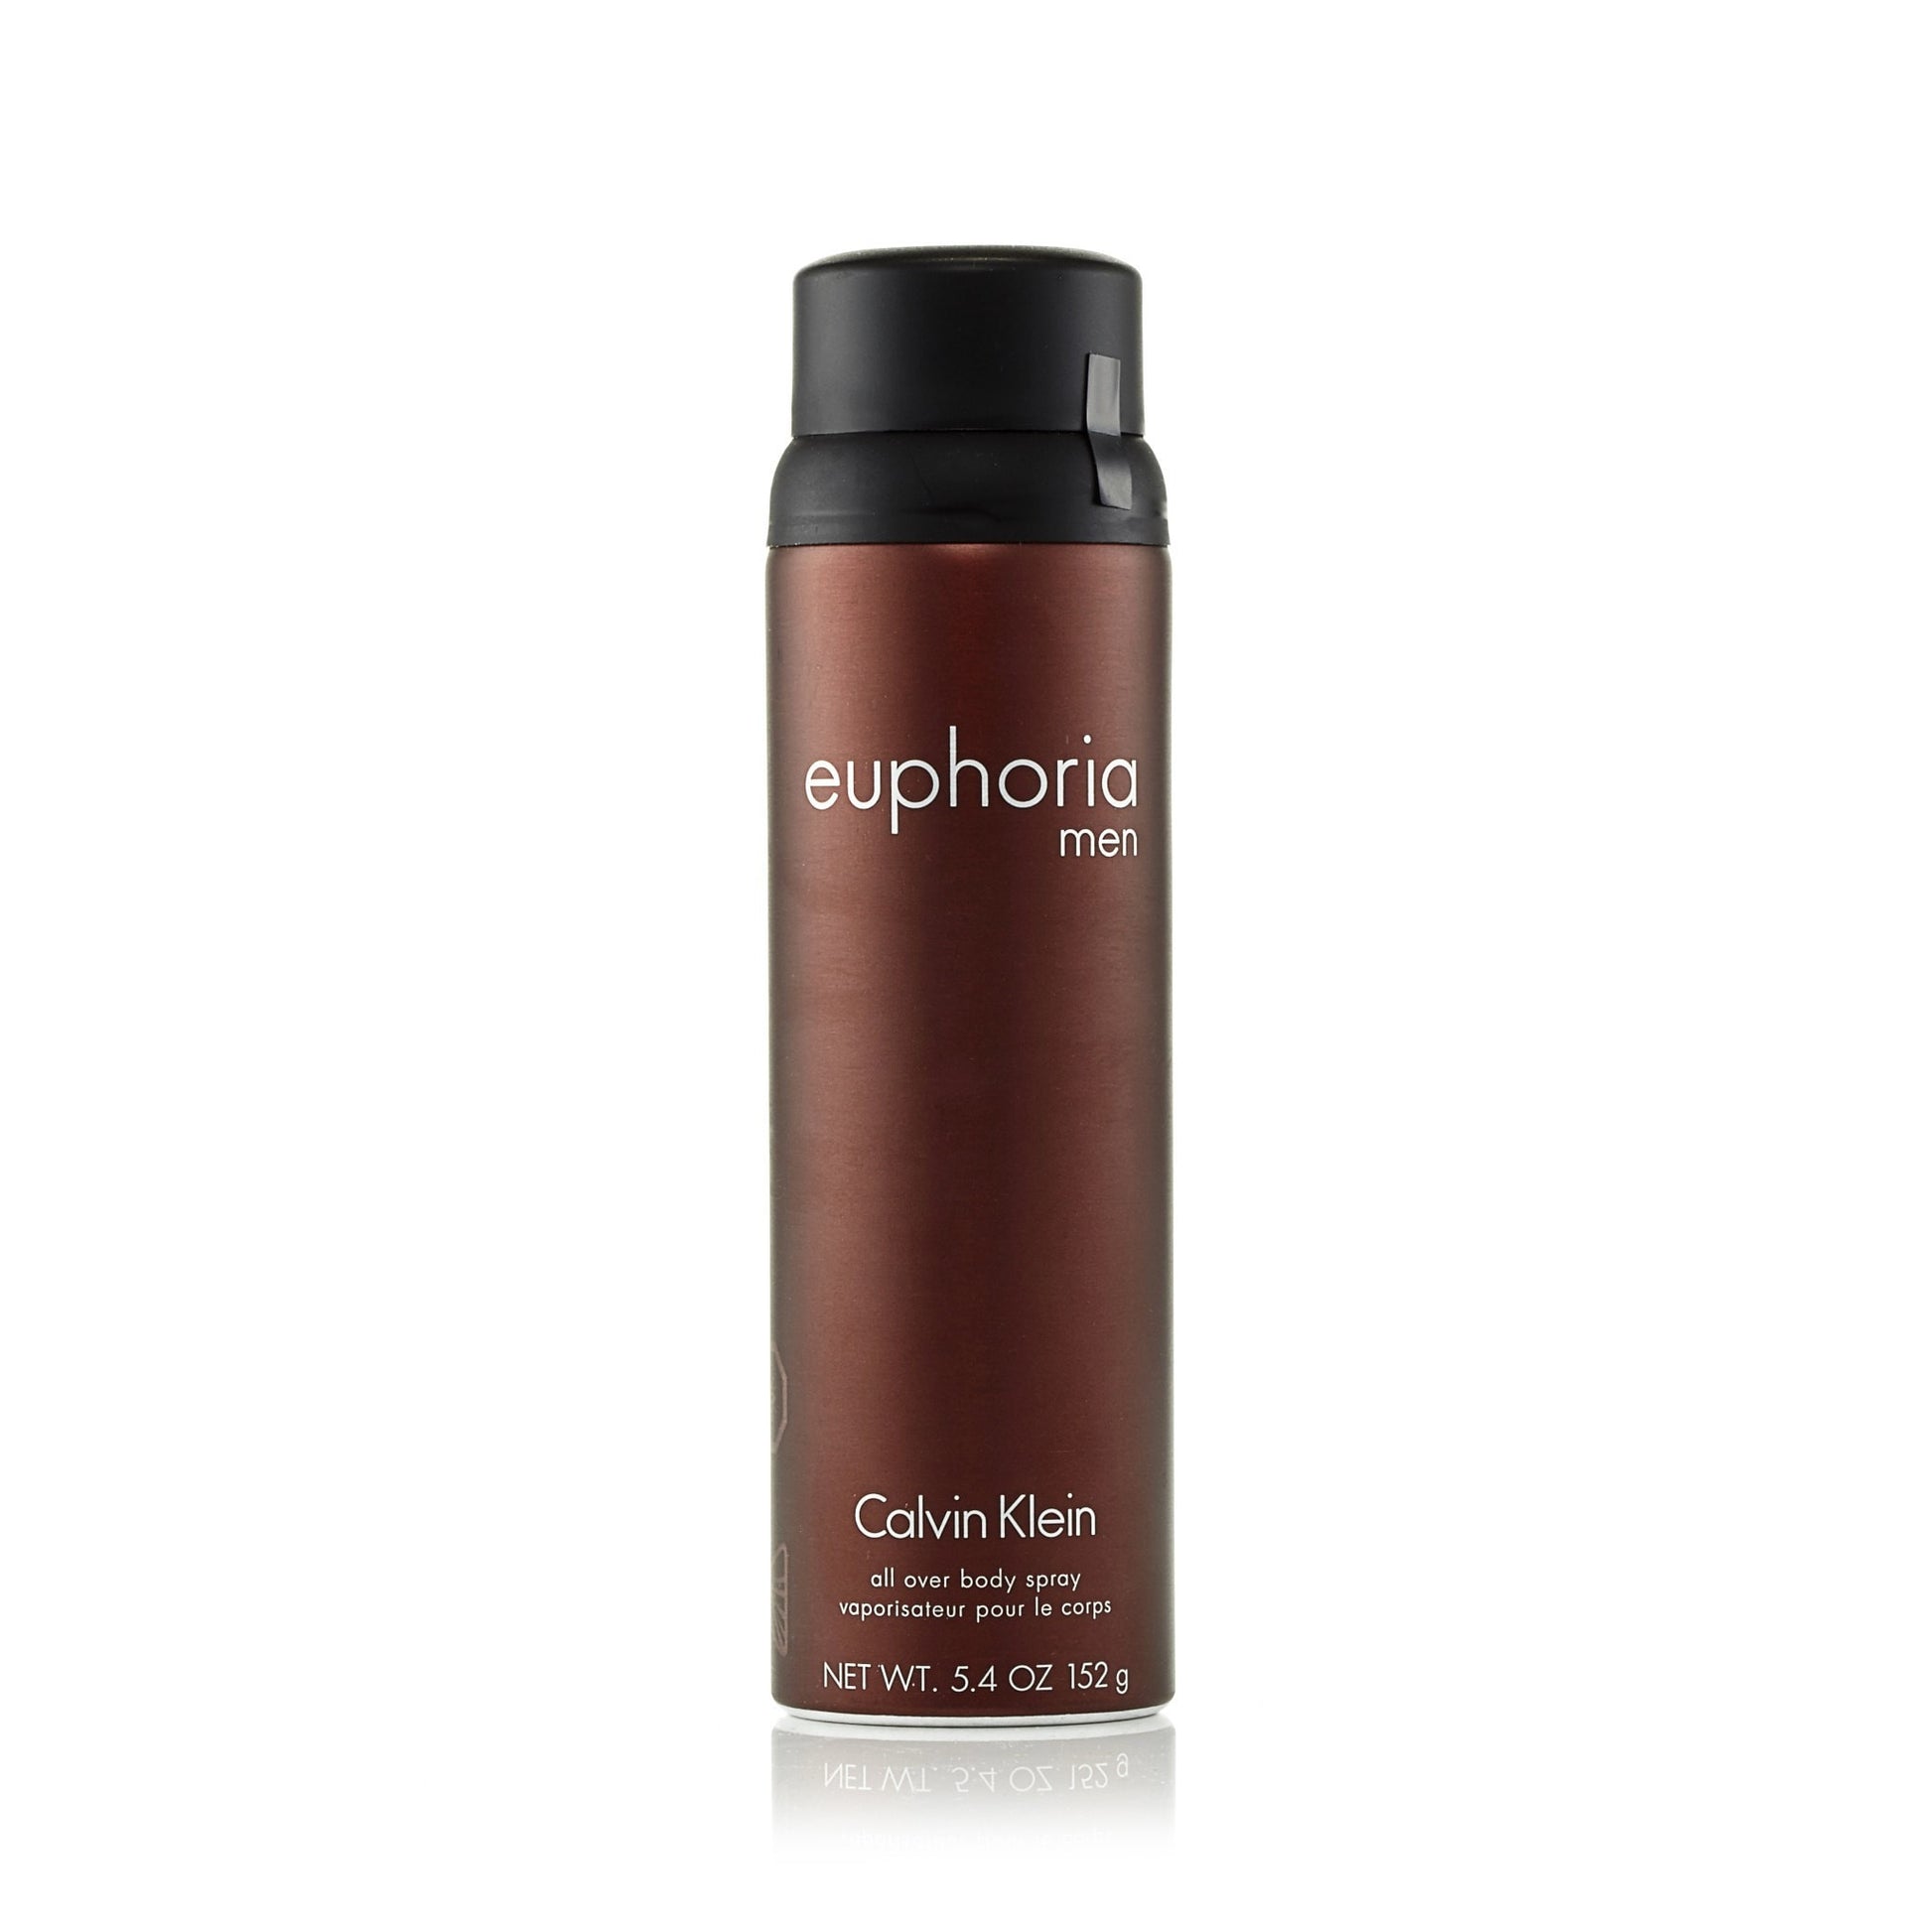 Euphoria Body Spray for Men by Calvin Klein 5.4 oz. Click to open in modal